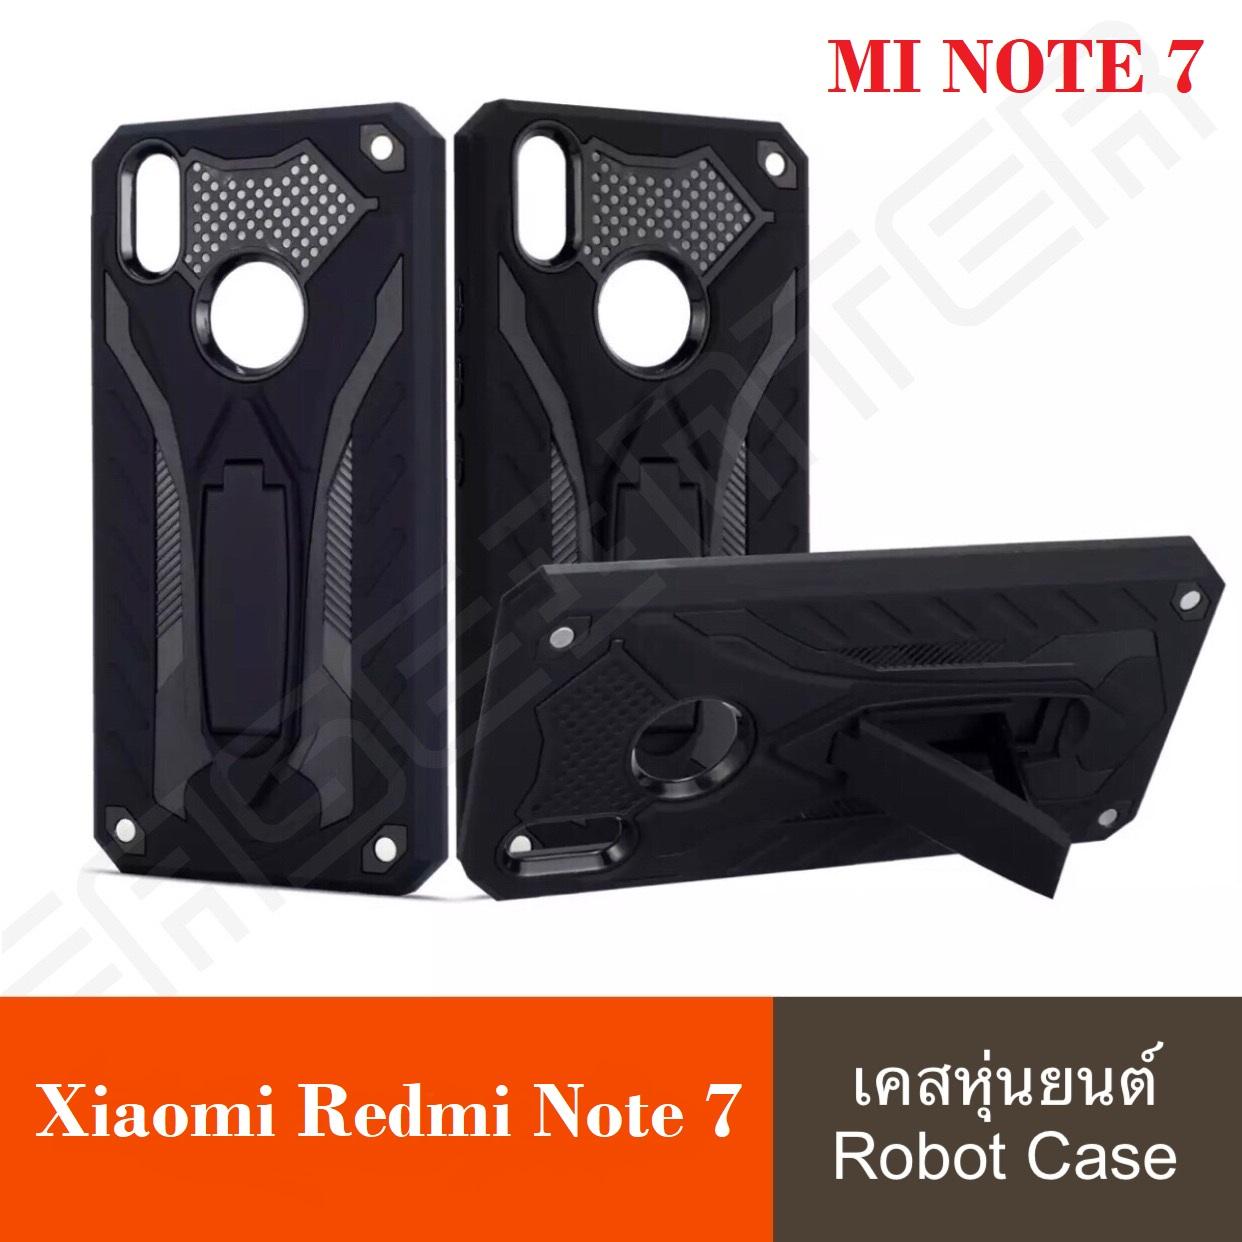 [รับประกันสินค้า] !! Xiaomi Redmi Note 7  เคสเสี่ยวมี่ เคสเสียวหมี่ Robot case เคสหุ่นยนต์ Xiaomi Redmi Note7 เคสไฮบริด มีขาตั้ง เคสกันกระแทก TPU CASE สินค้าใหม่